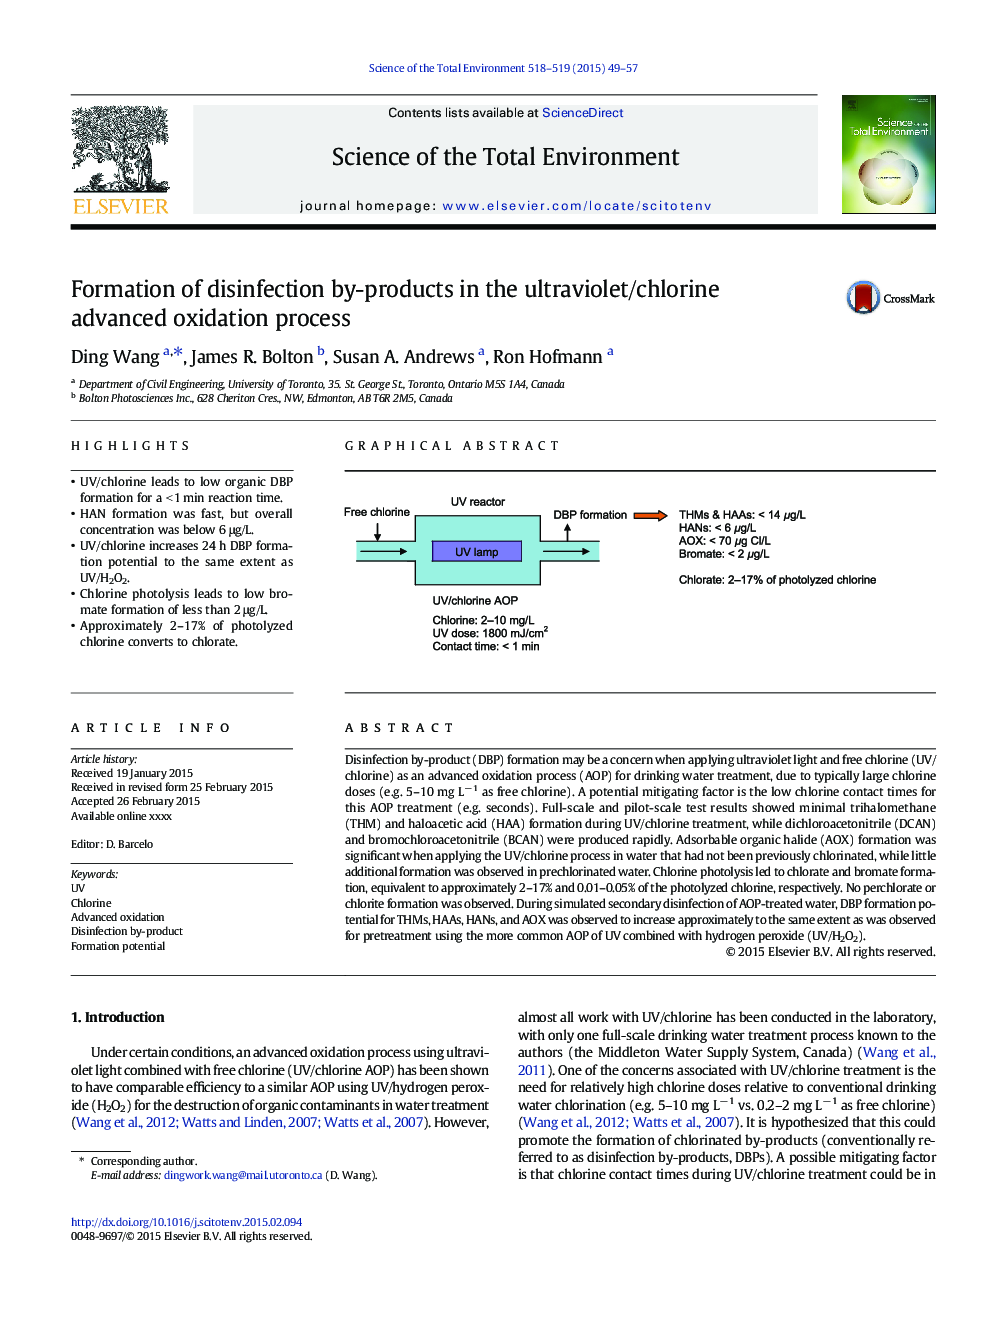 تشکیل فرآورده های ضد عفونی در فرایند اکسیداسیون پیشرفته ماوراء بنفش / کلر 